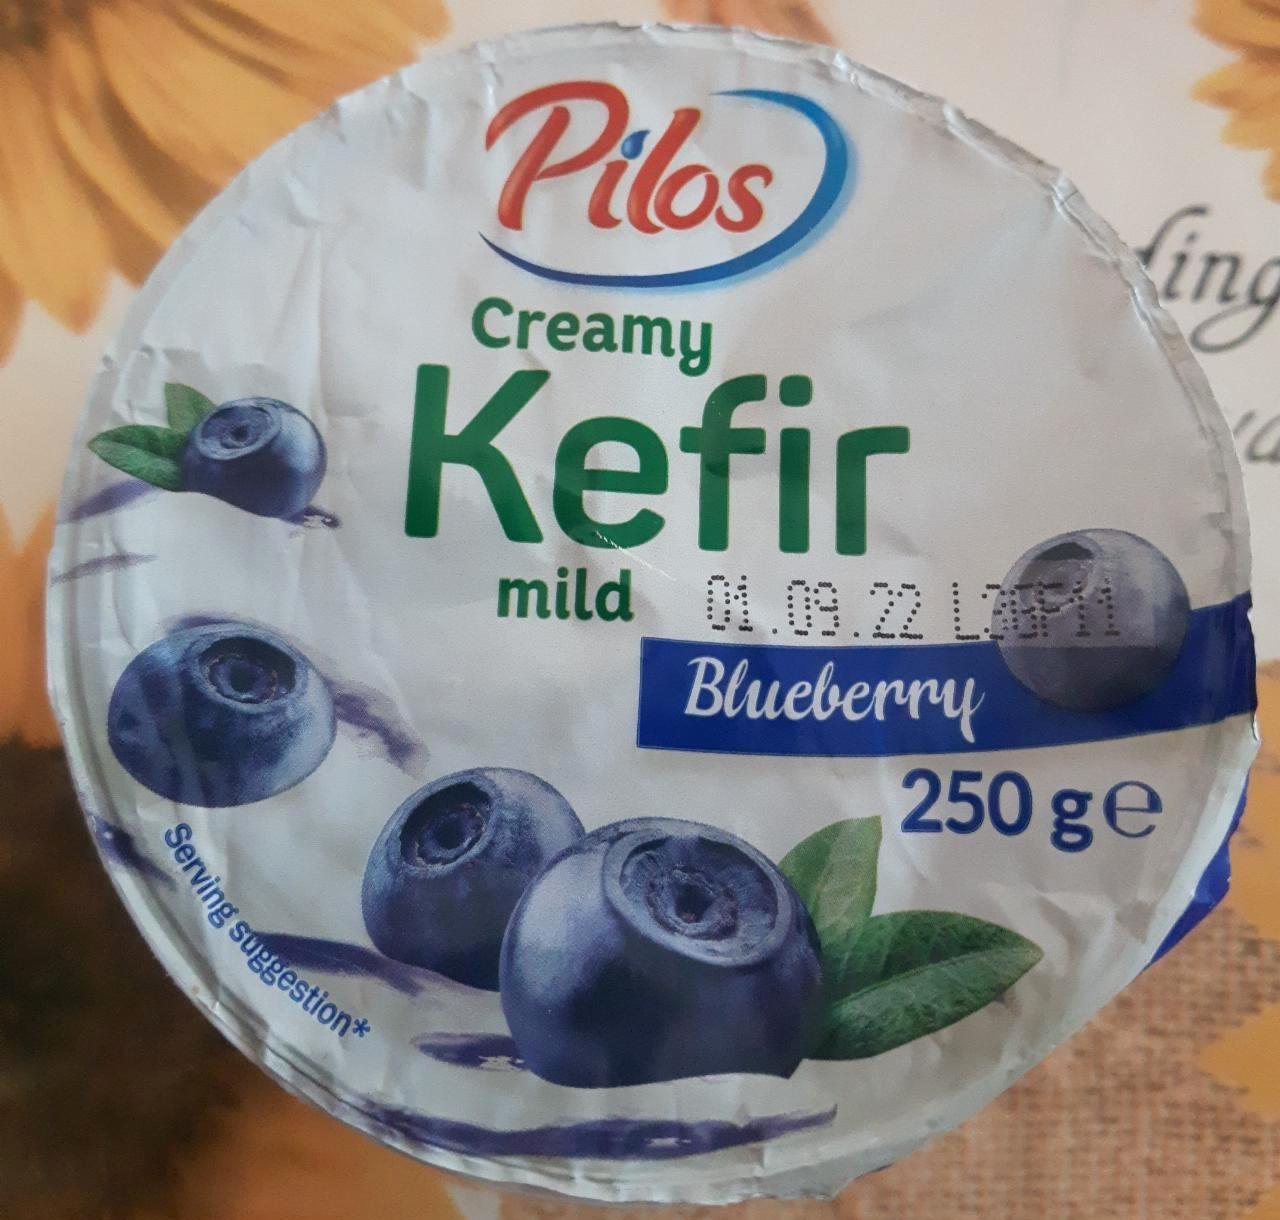 Képek - Creamy kefir mild Blueberry Pilos